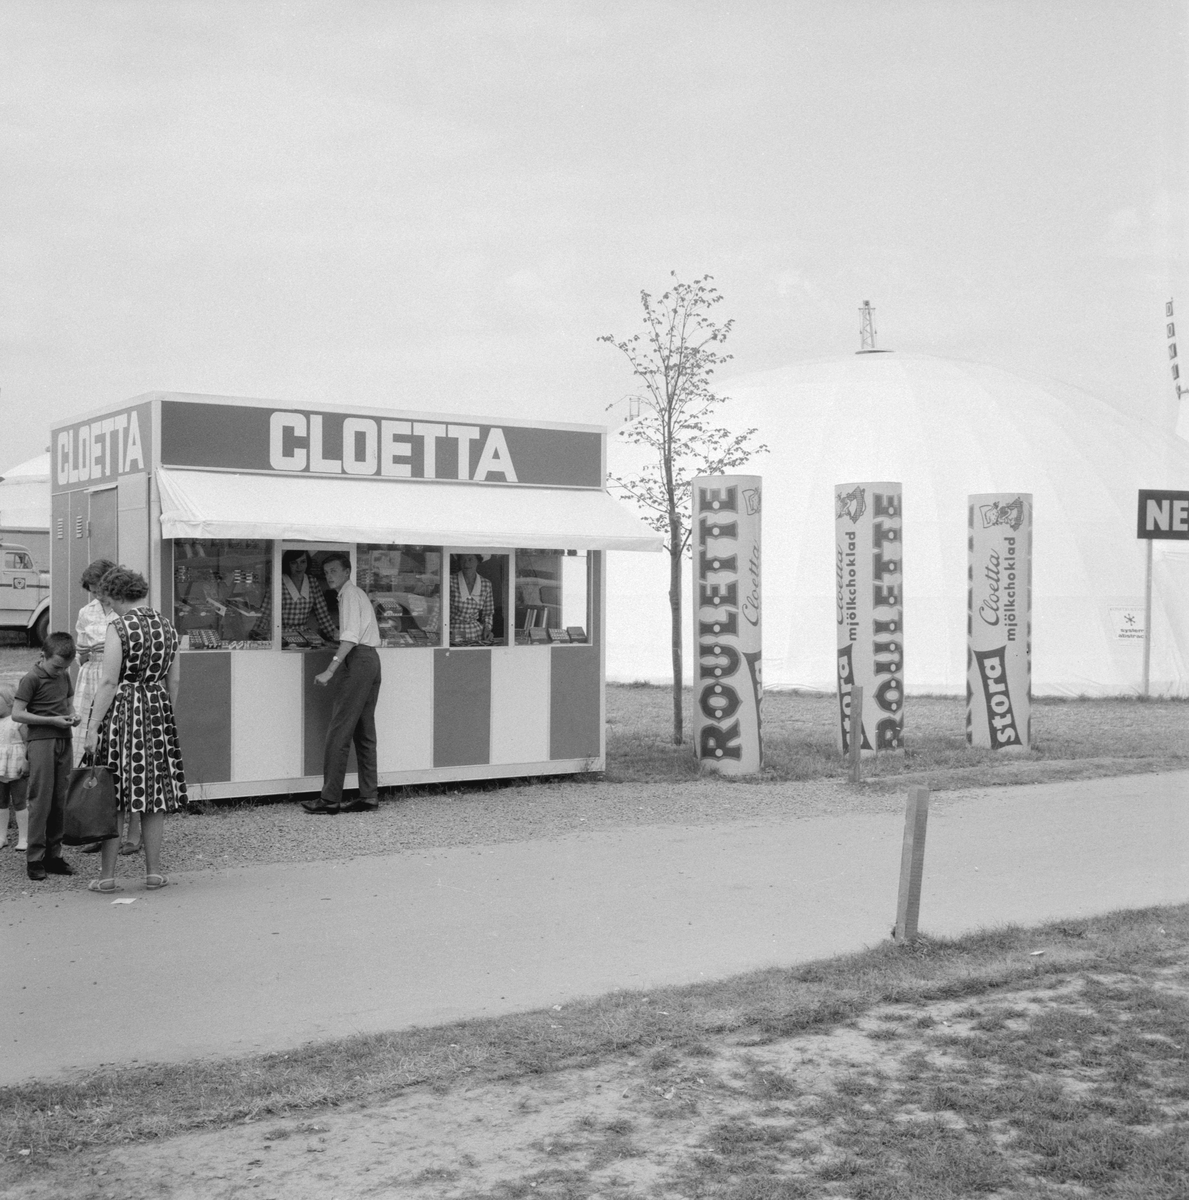 Motiv från utställning NU64 (Norrköpingsutställningen) där en mängd utställare samlades i och kring Himmelstalund sommaren 1964. Ett populärt inslag får vi förmoda att Cloettas kiosk var.